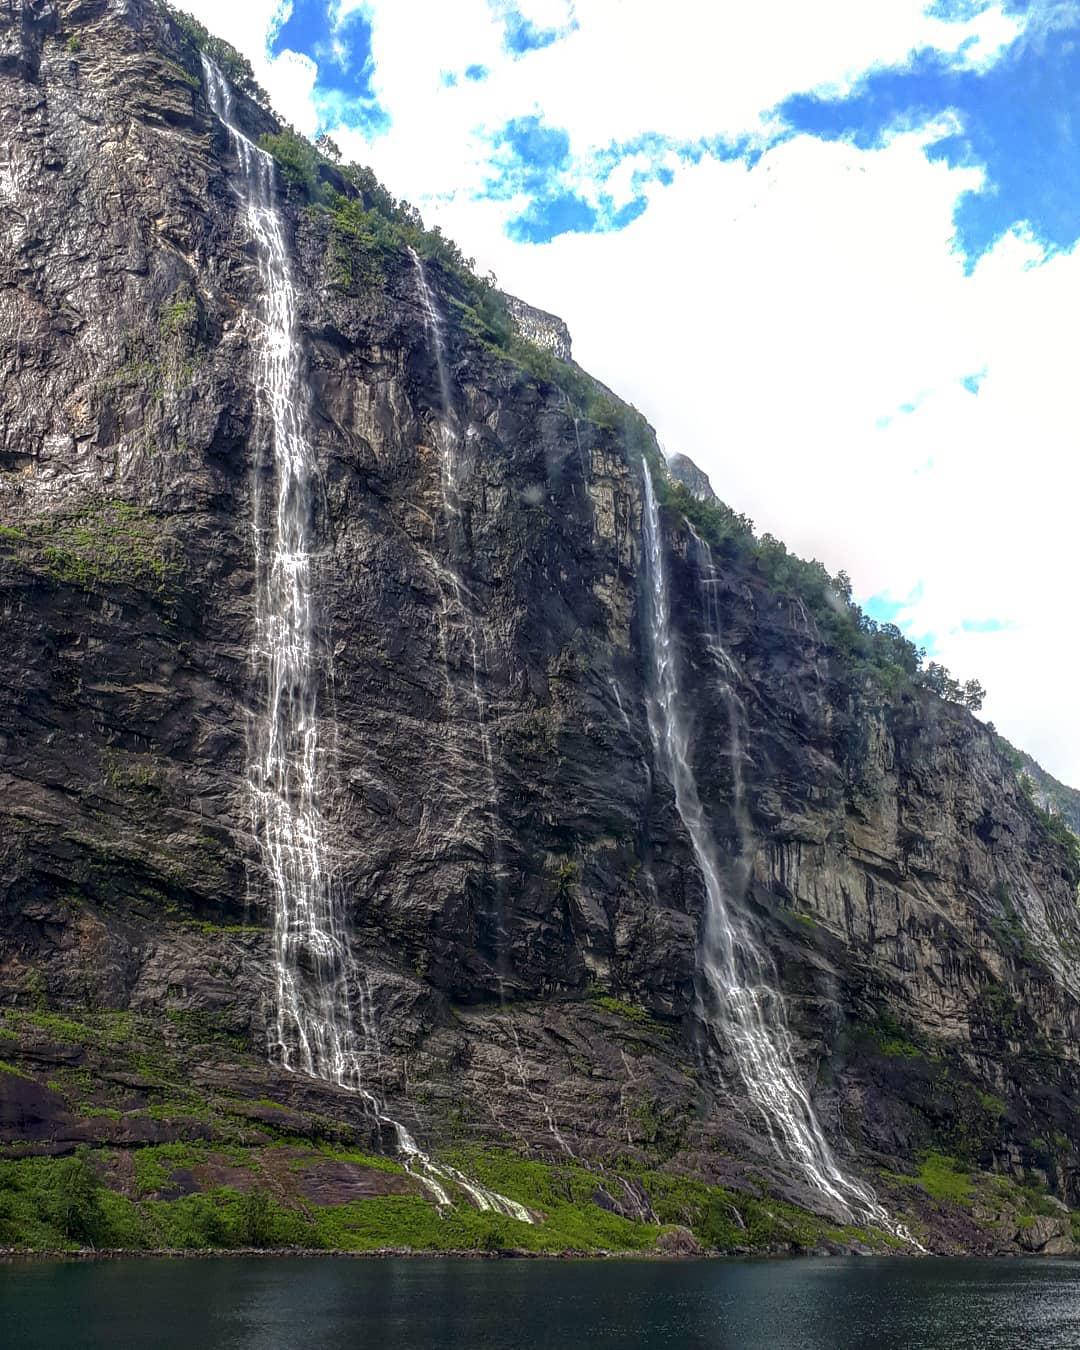 盖朗厄尔的明星景点——七姐妹瀑布  今年8月去欧洲避暑，想着挪威纬度较高，一定是个乘凉避暑的佳处。然